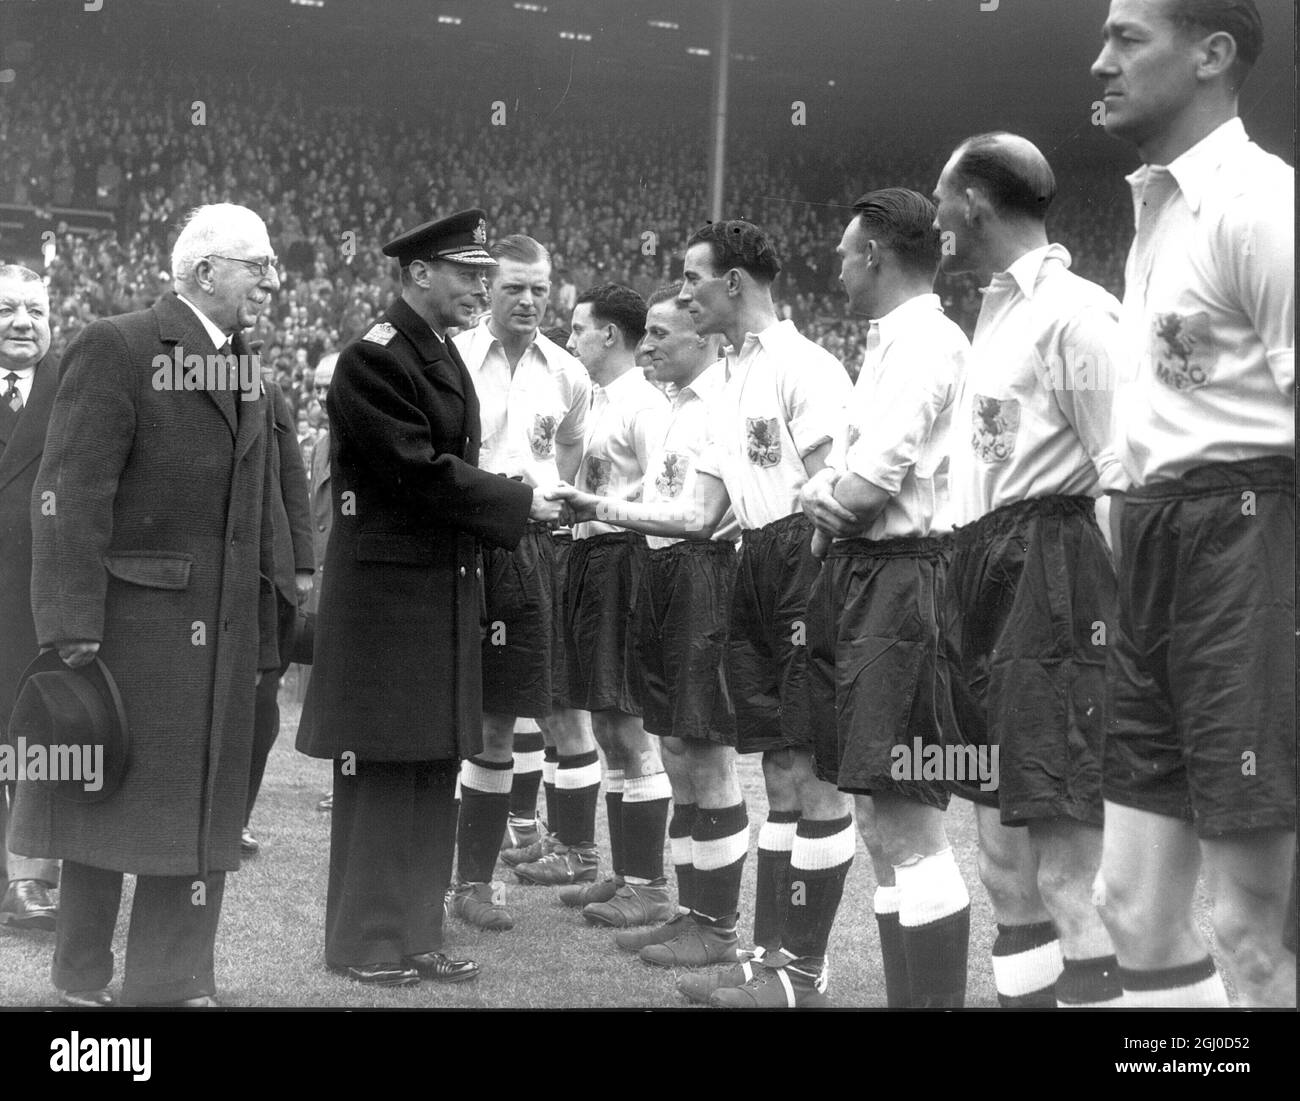 Le roi et la reine, avec la princesse Elizabeth faisant sa première apparition publique en uniforme ATS, étaient parmi 90,000 spectateurs à Wembley pour la finale de la coupe du Sud de la Ligue entre Chelsea et Millwall. 7 avril 1945 Banque D'Images